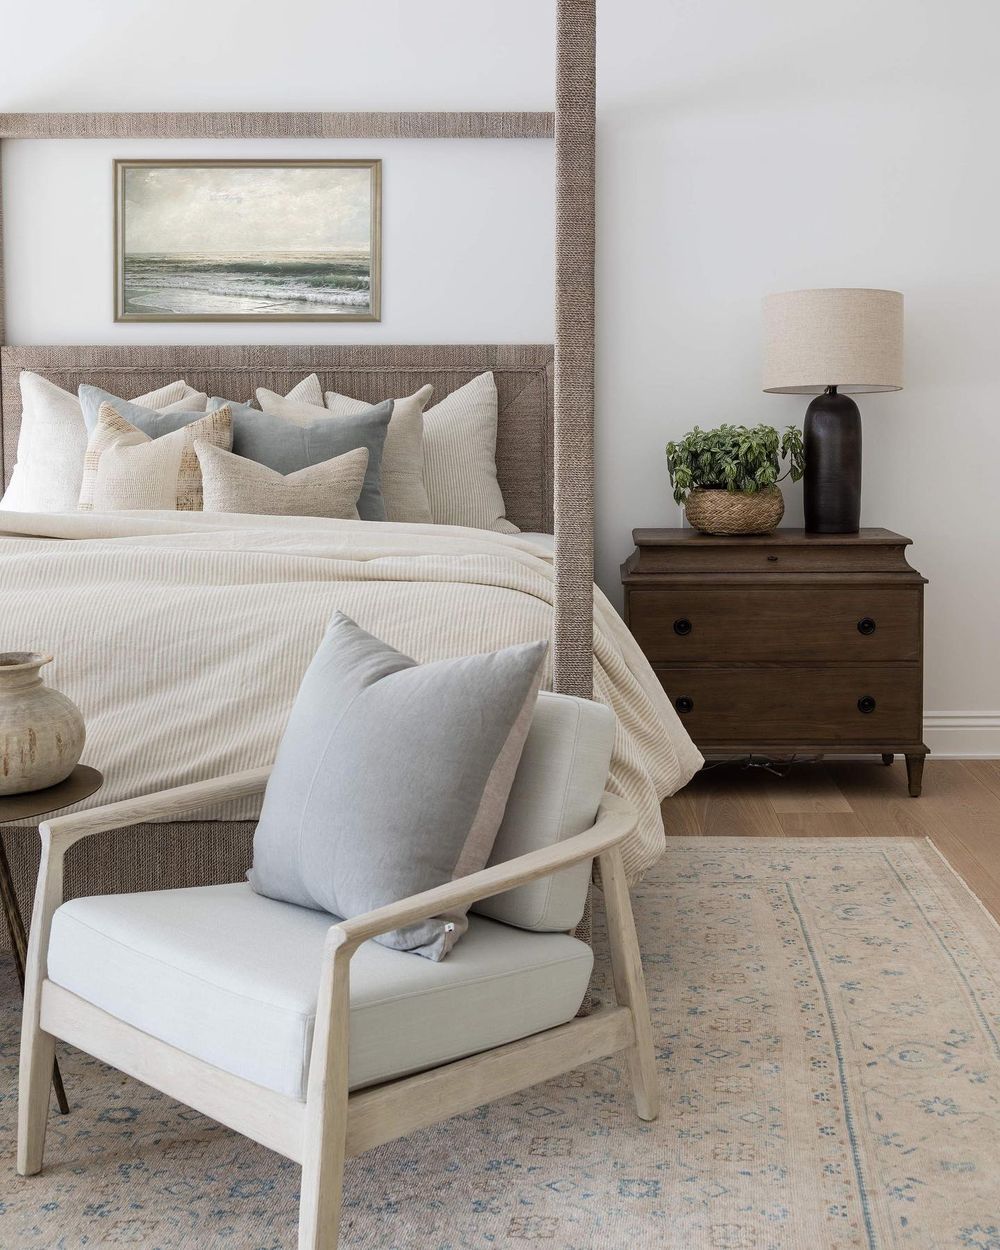 Modern Coastal bedroom ideas puresaltinteriors